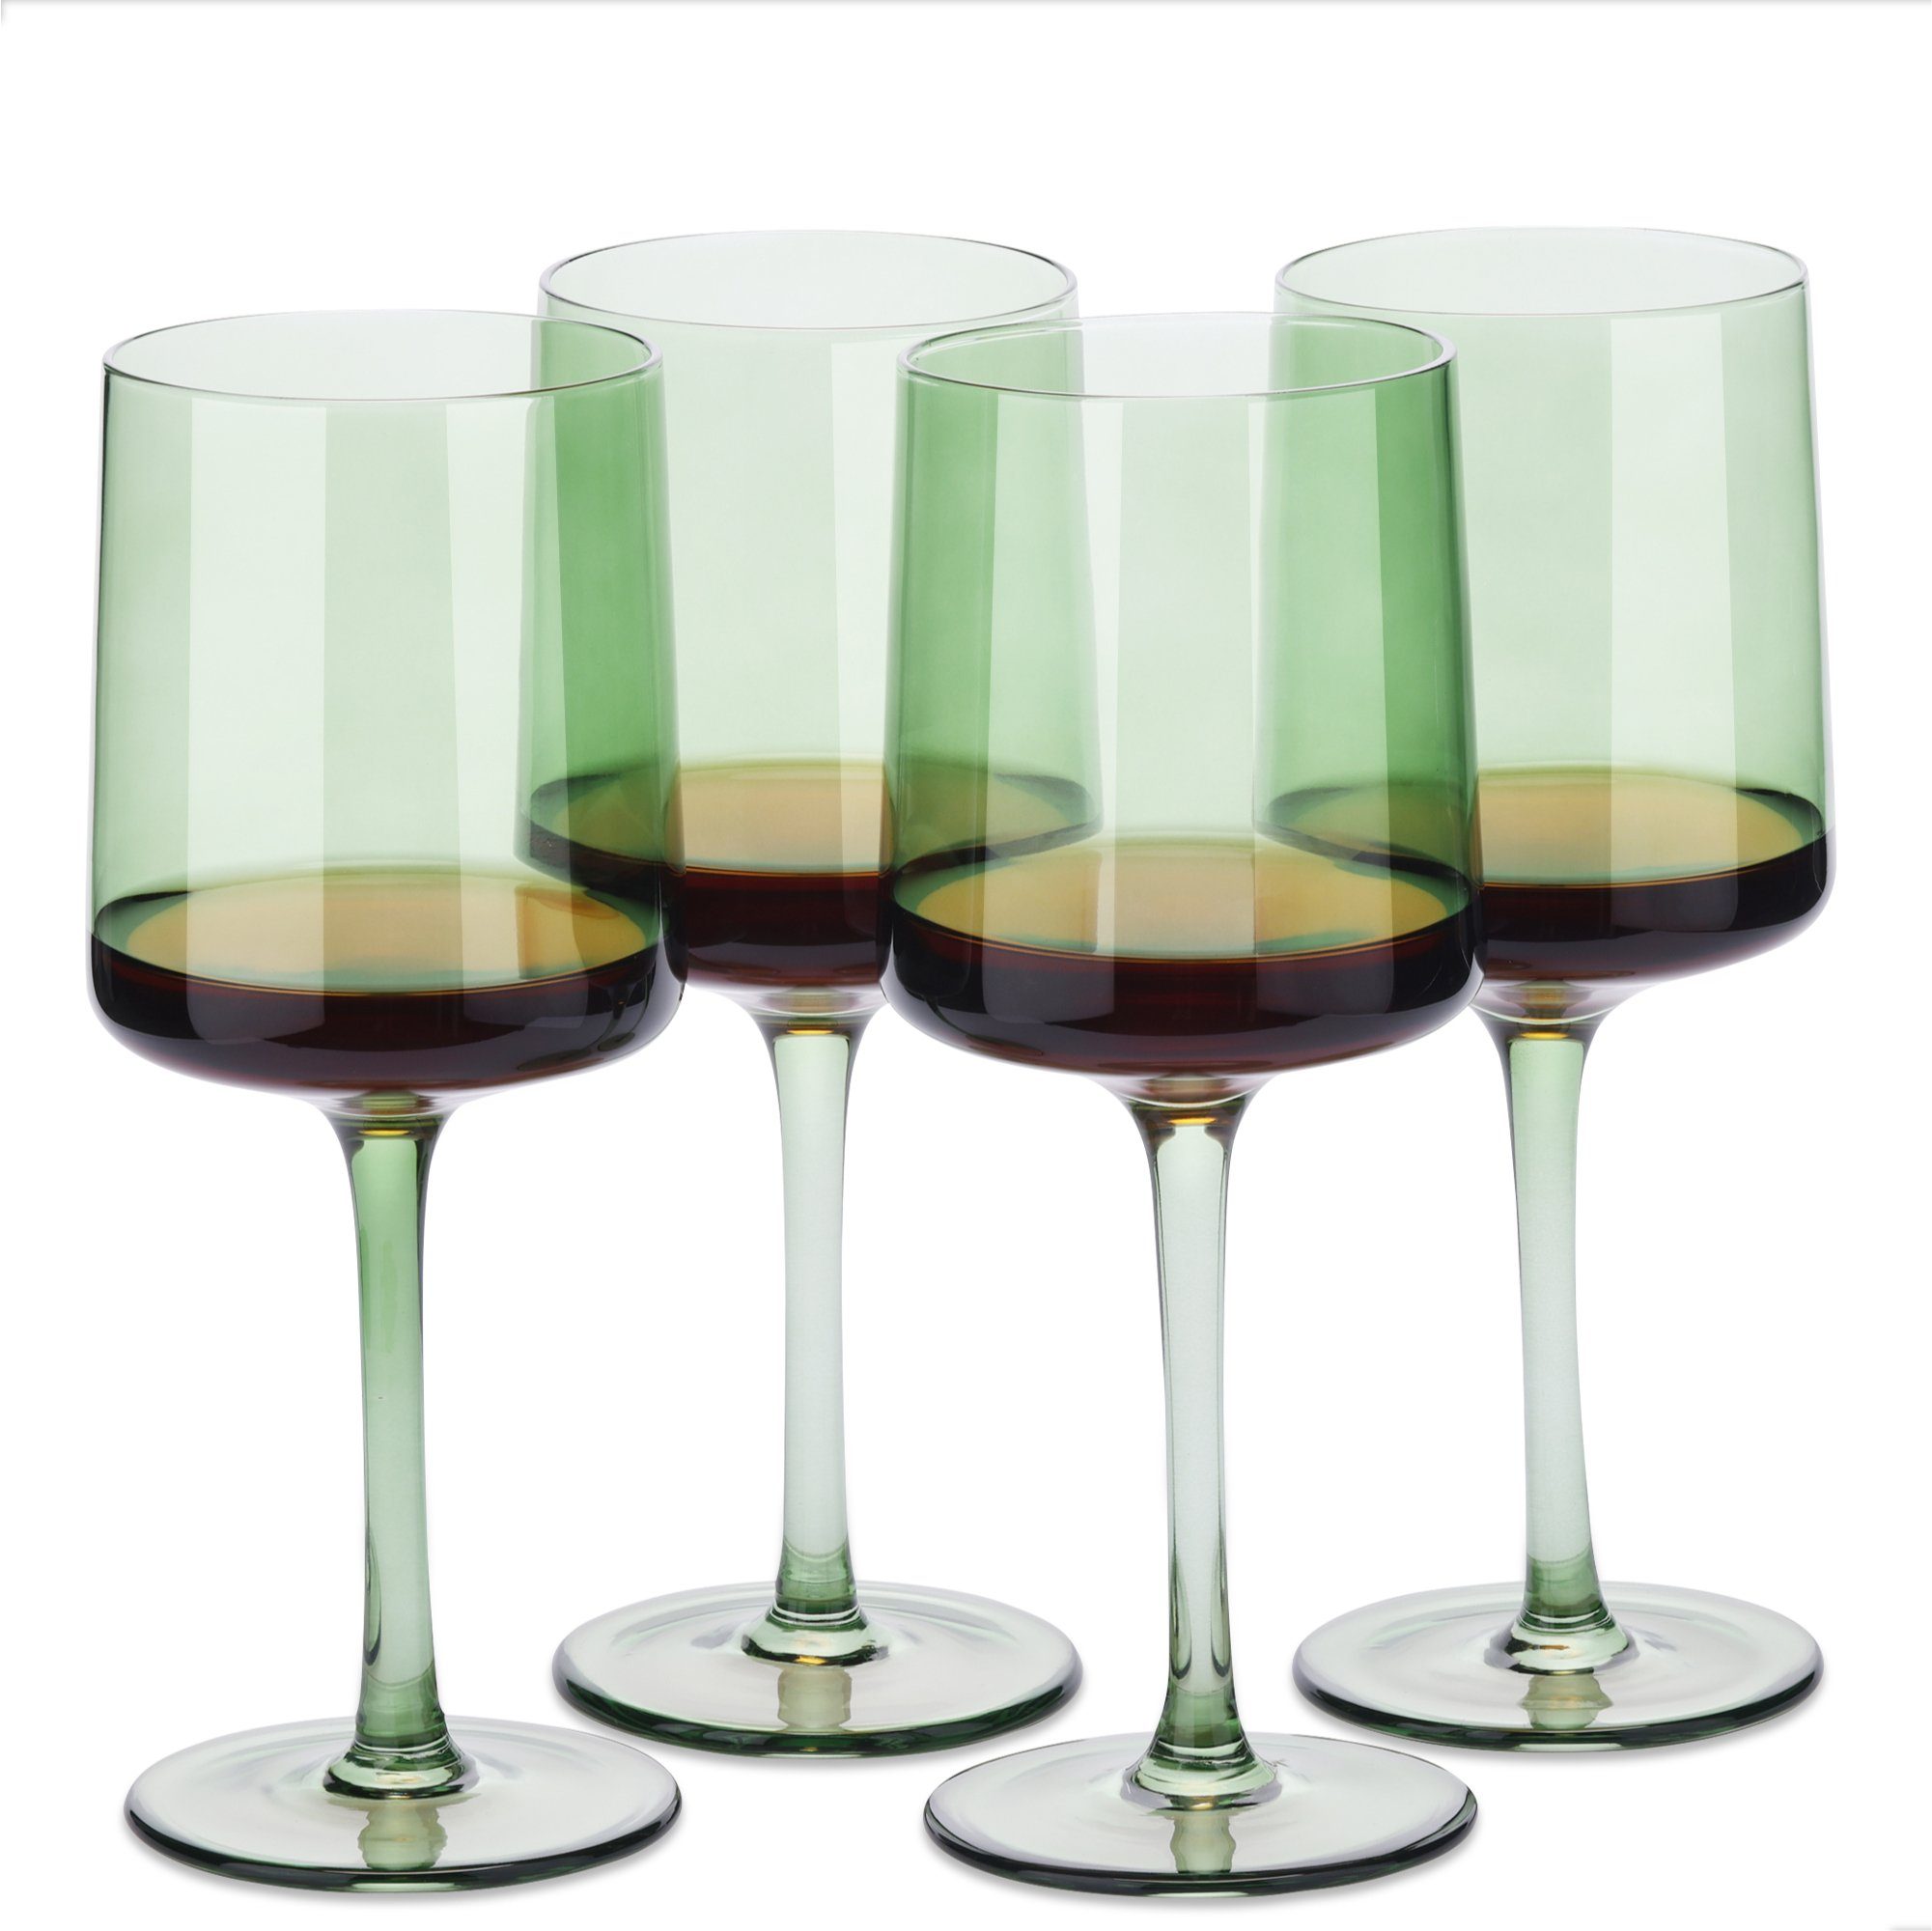 Navaris Weinglas mintgrün getönte Келихи 4er-Set - Farbige Келихи mit Stiel, Glas